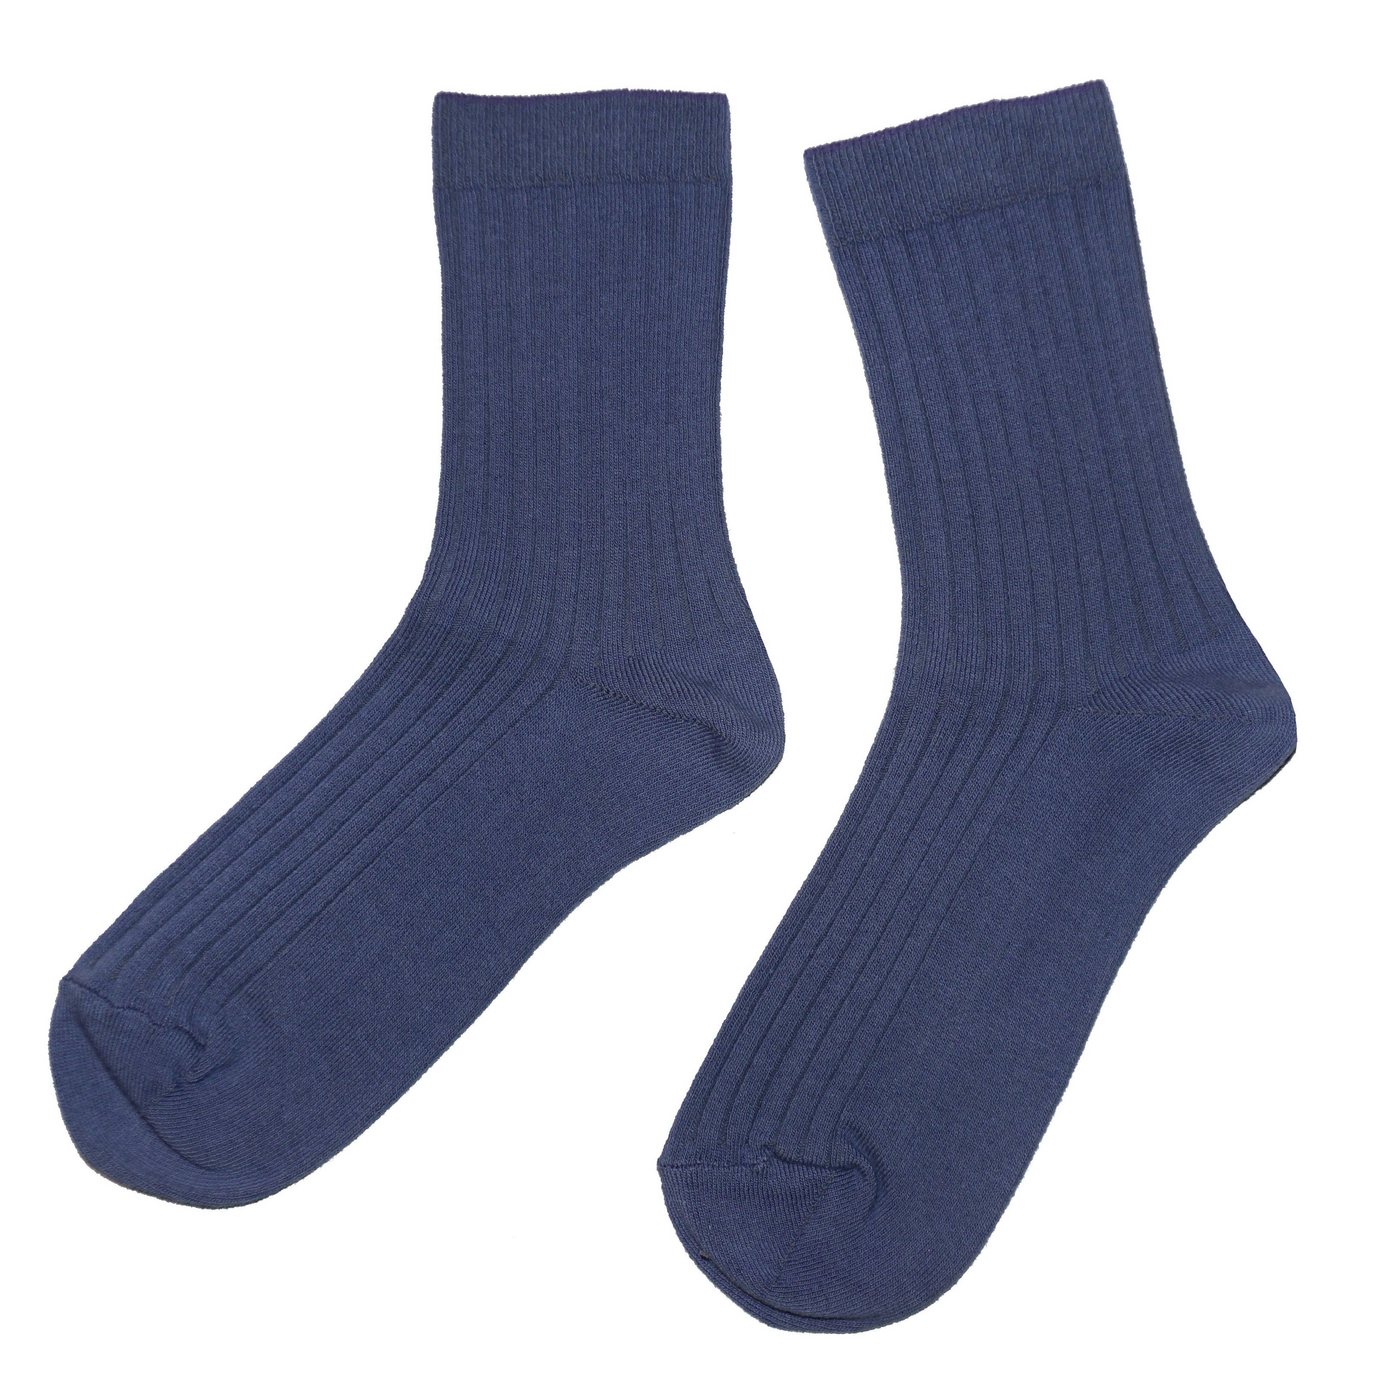 WERI SPEZIALS Strumpfhersteller GmbH Socken Herren Socken >>Rippe: Natur Farben<< aus Baumwolle von WERI SPEZIALS Strumpfhersteller GmbH